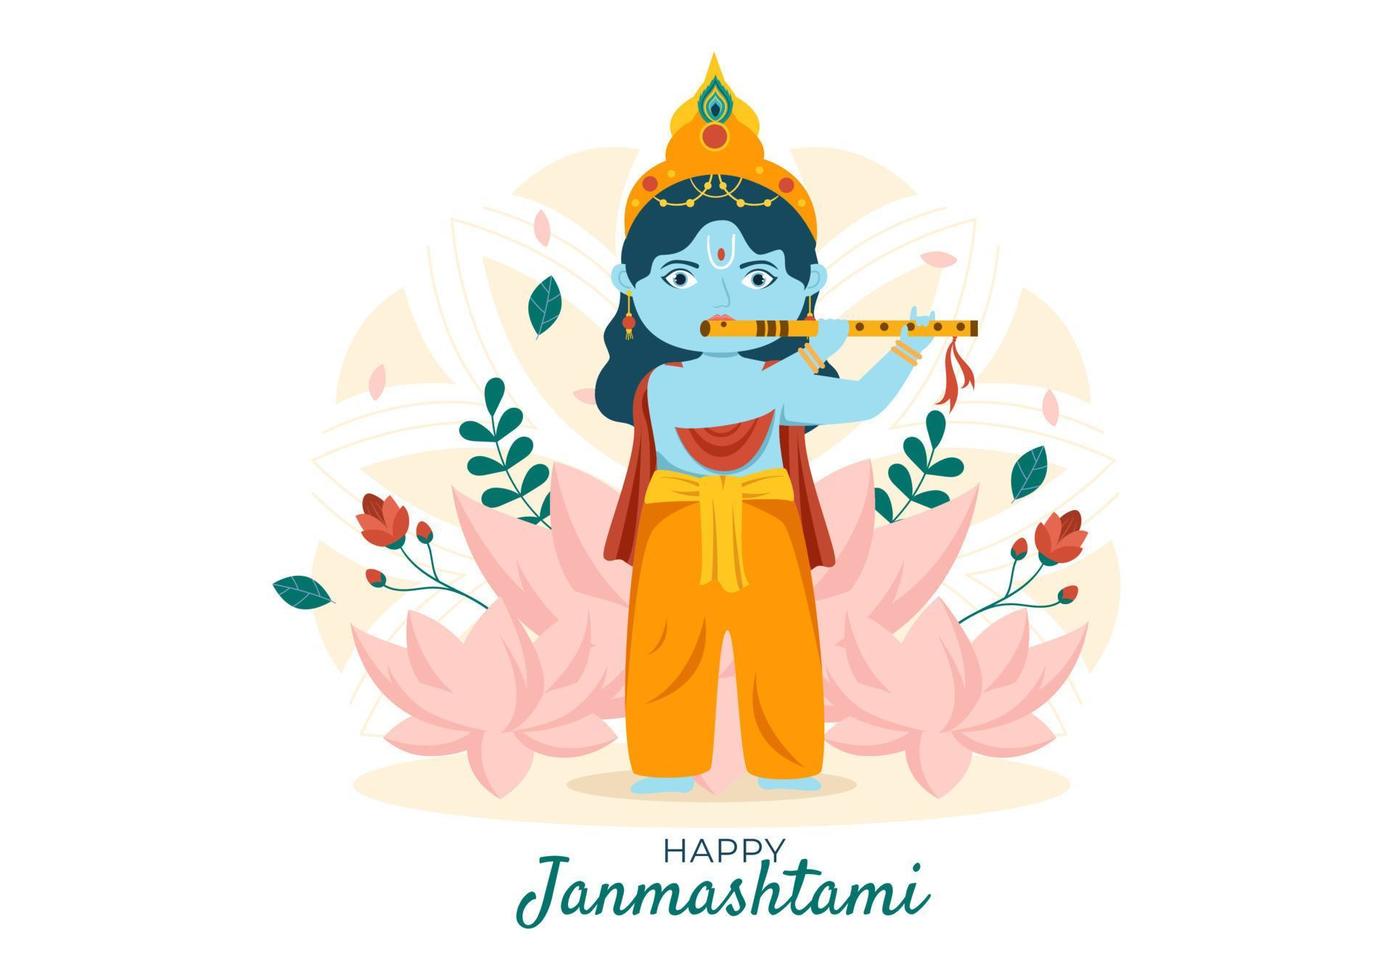 fröhliches krishna janmashtami festival von indien mit bansuri und flöte, dahi handi und pfauenfeder in flacher niedlicher karikaturhintergrundillustration vektor